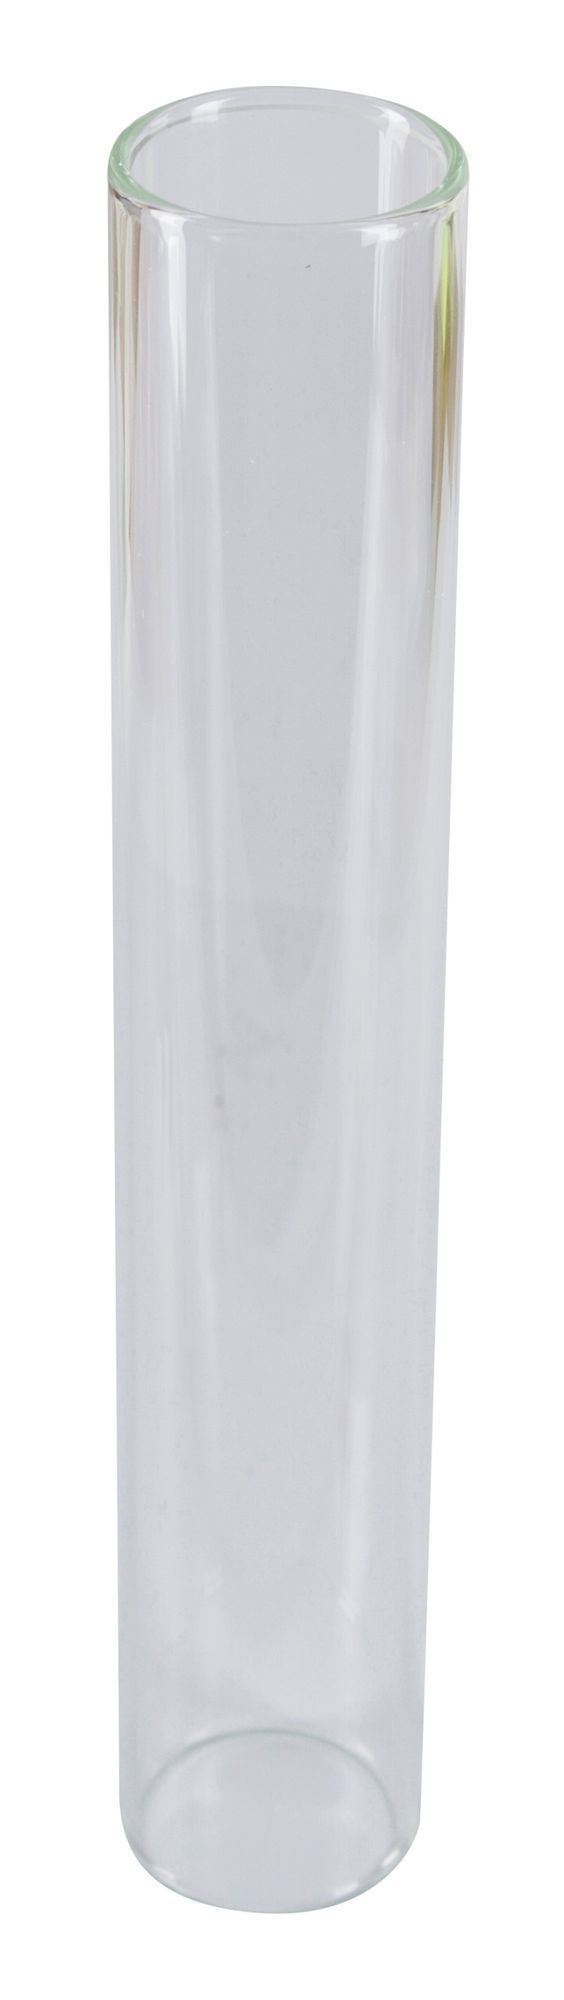 Glaszylinder - Ersatzglas für Roux-Spritze, 50 ml